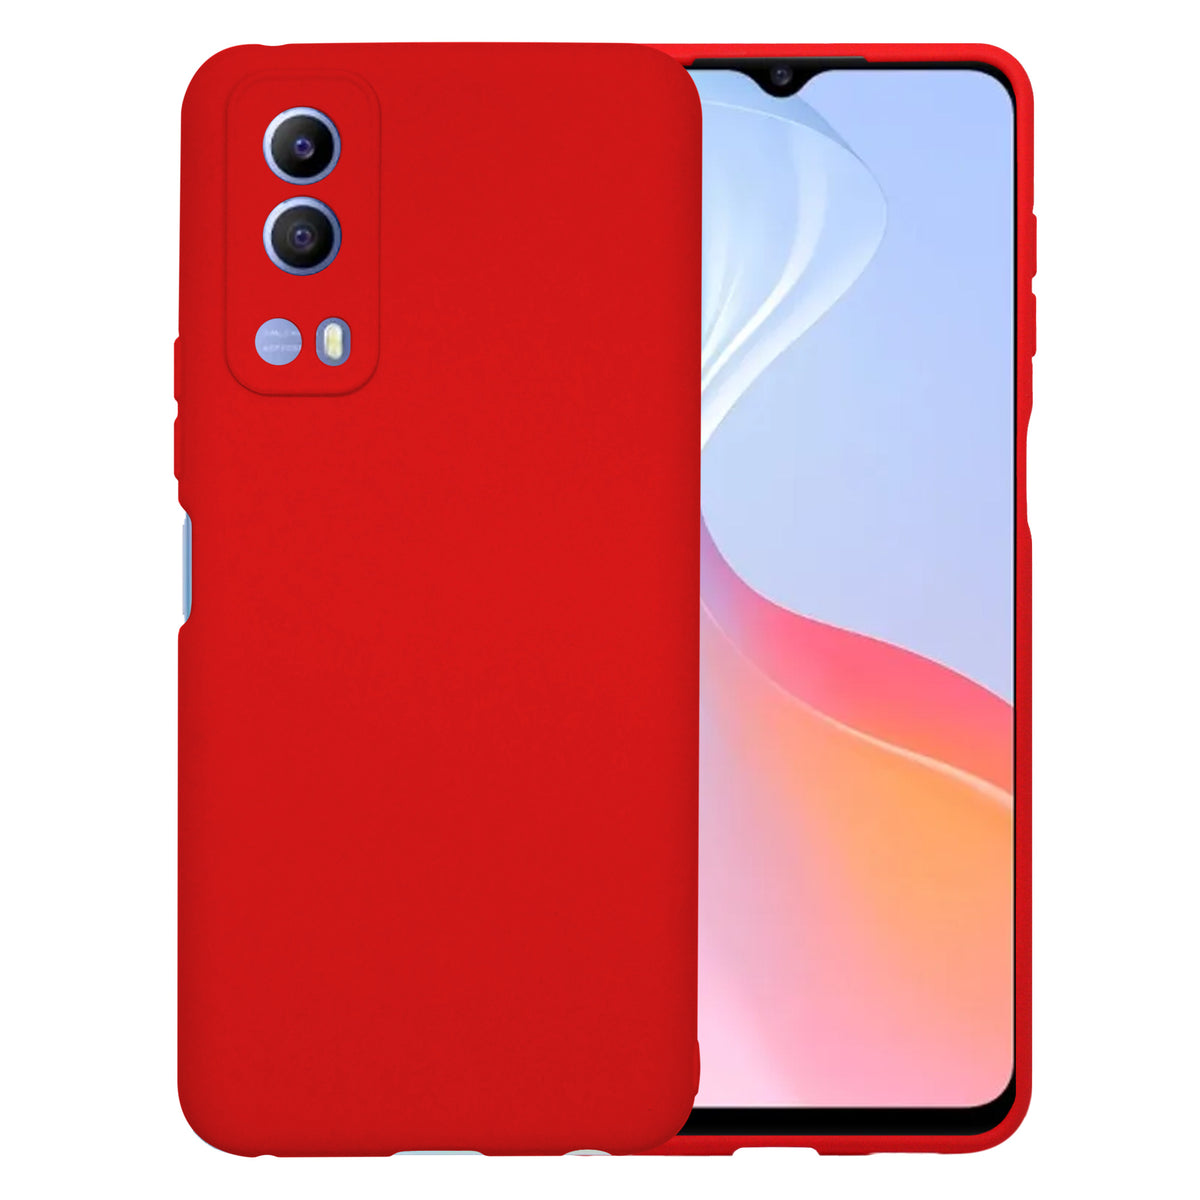 Funda Molan Cano Case De Silicon Suave Para Huawei Nova 5t Rojo